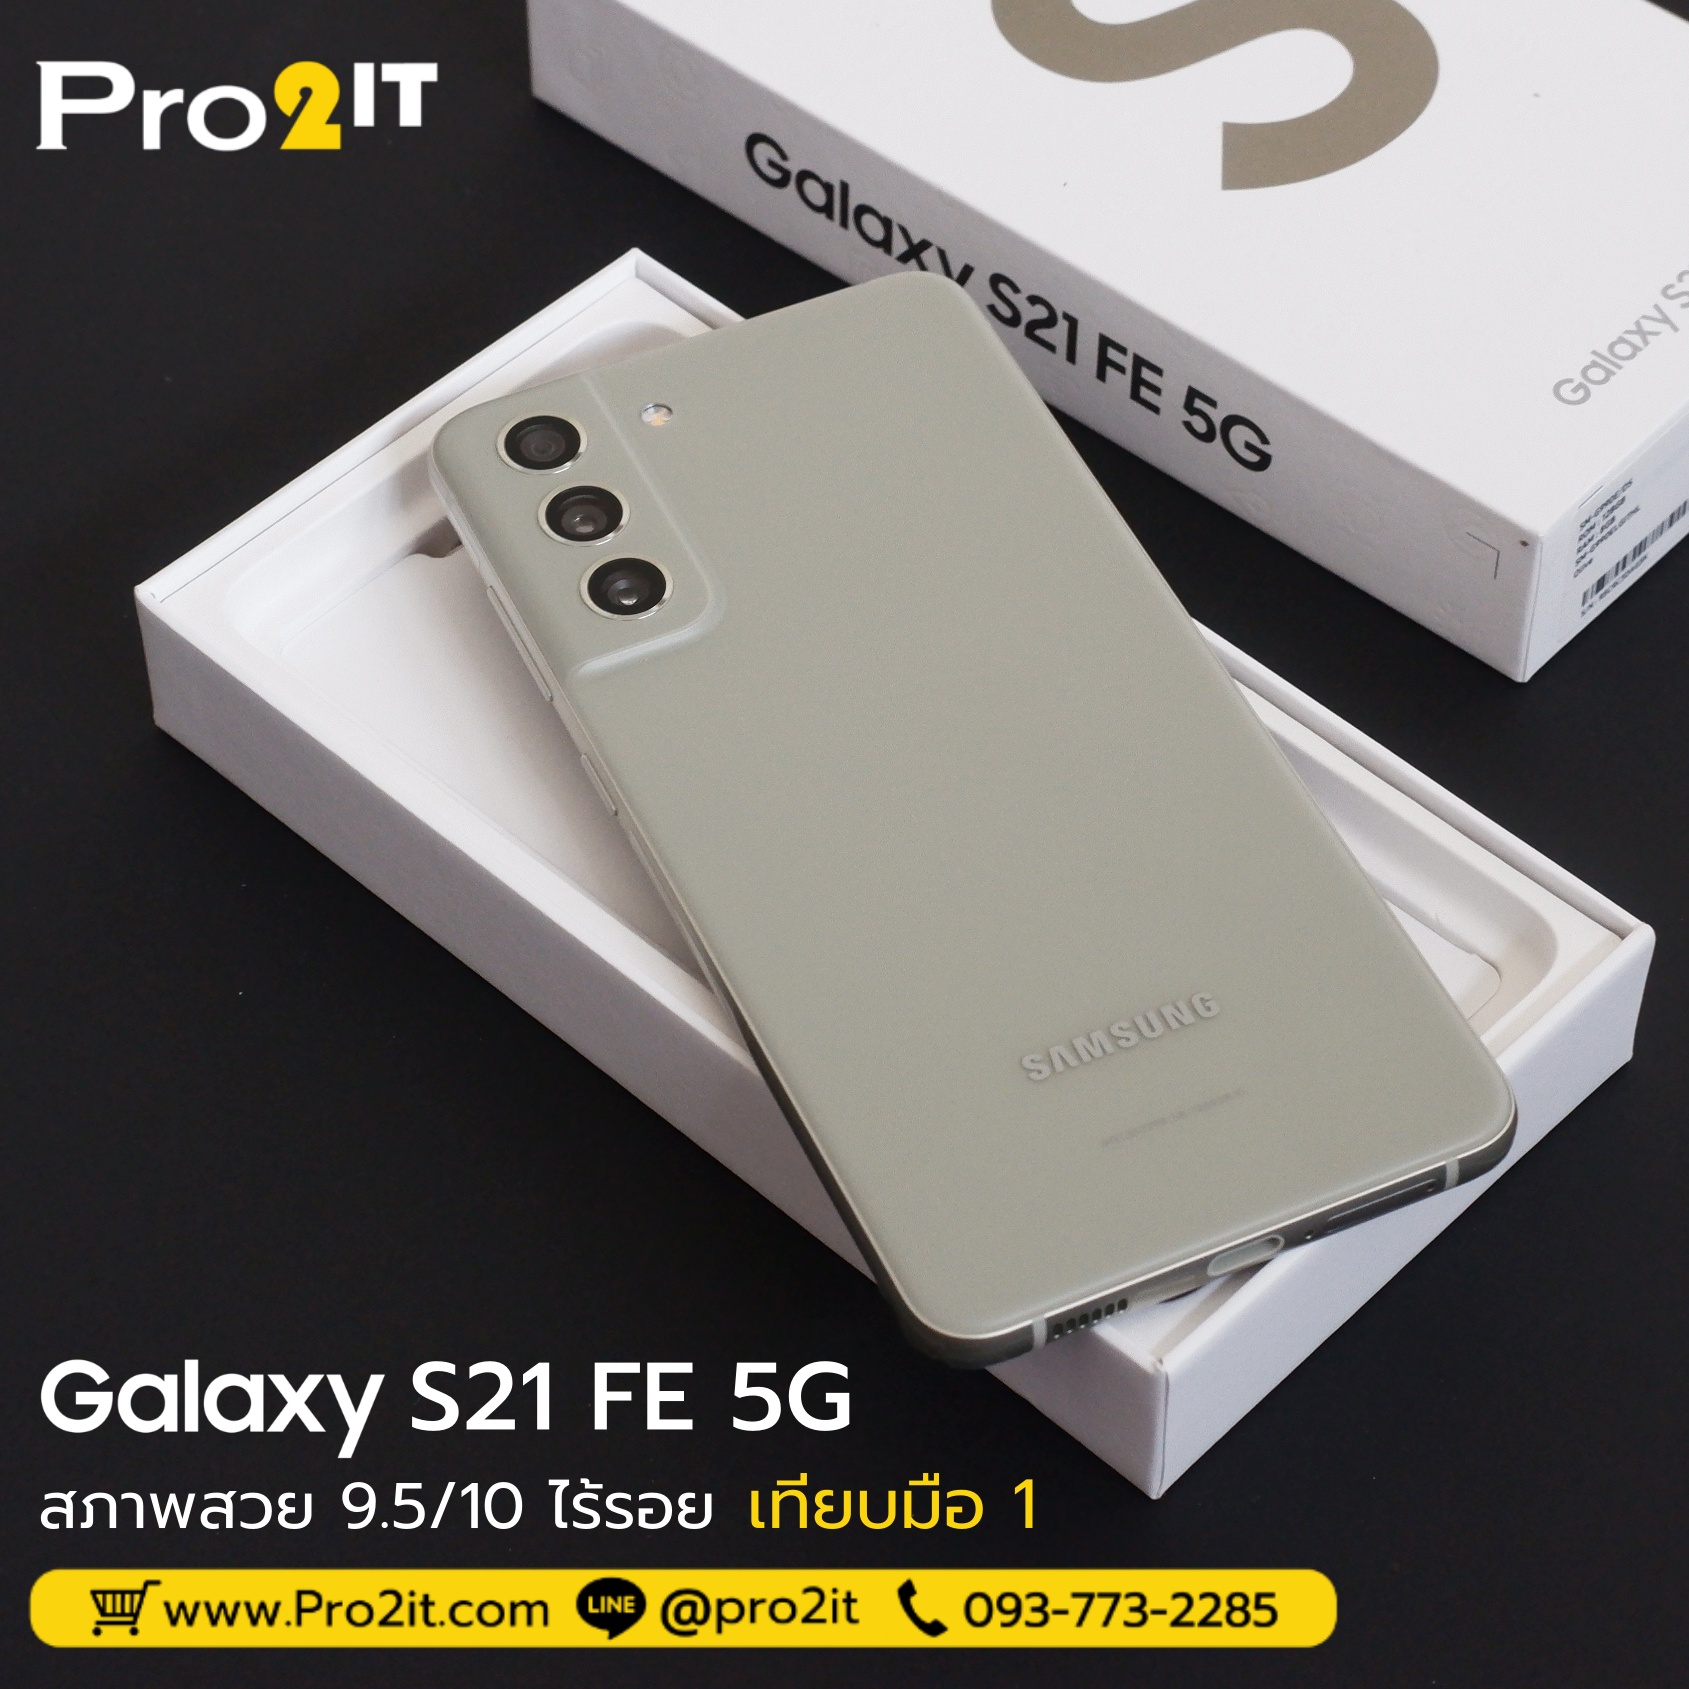 Galaxy S21 FE 5G (Olive) 128GB